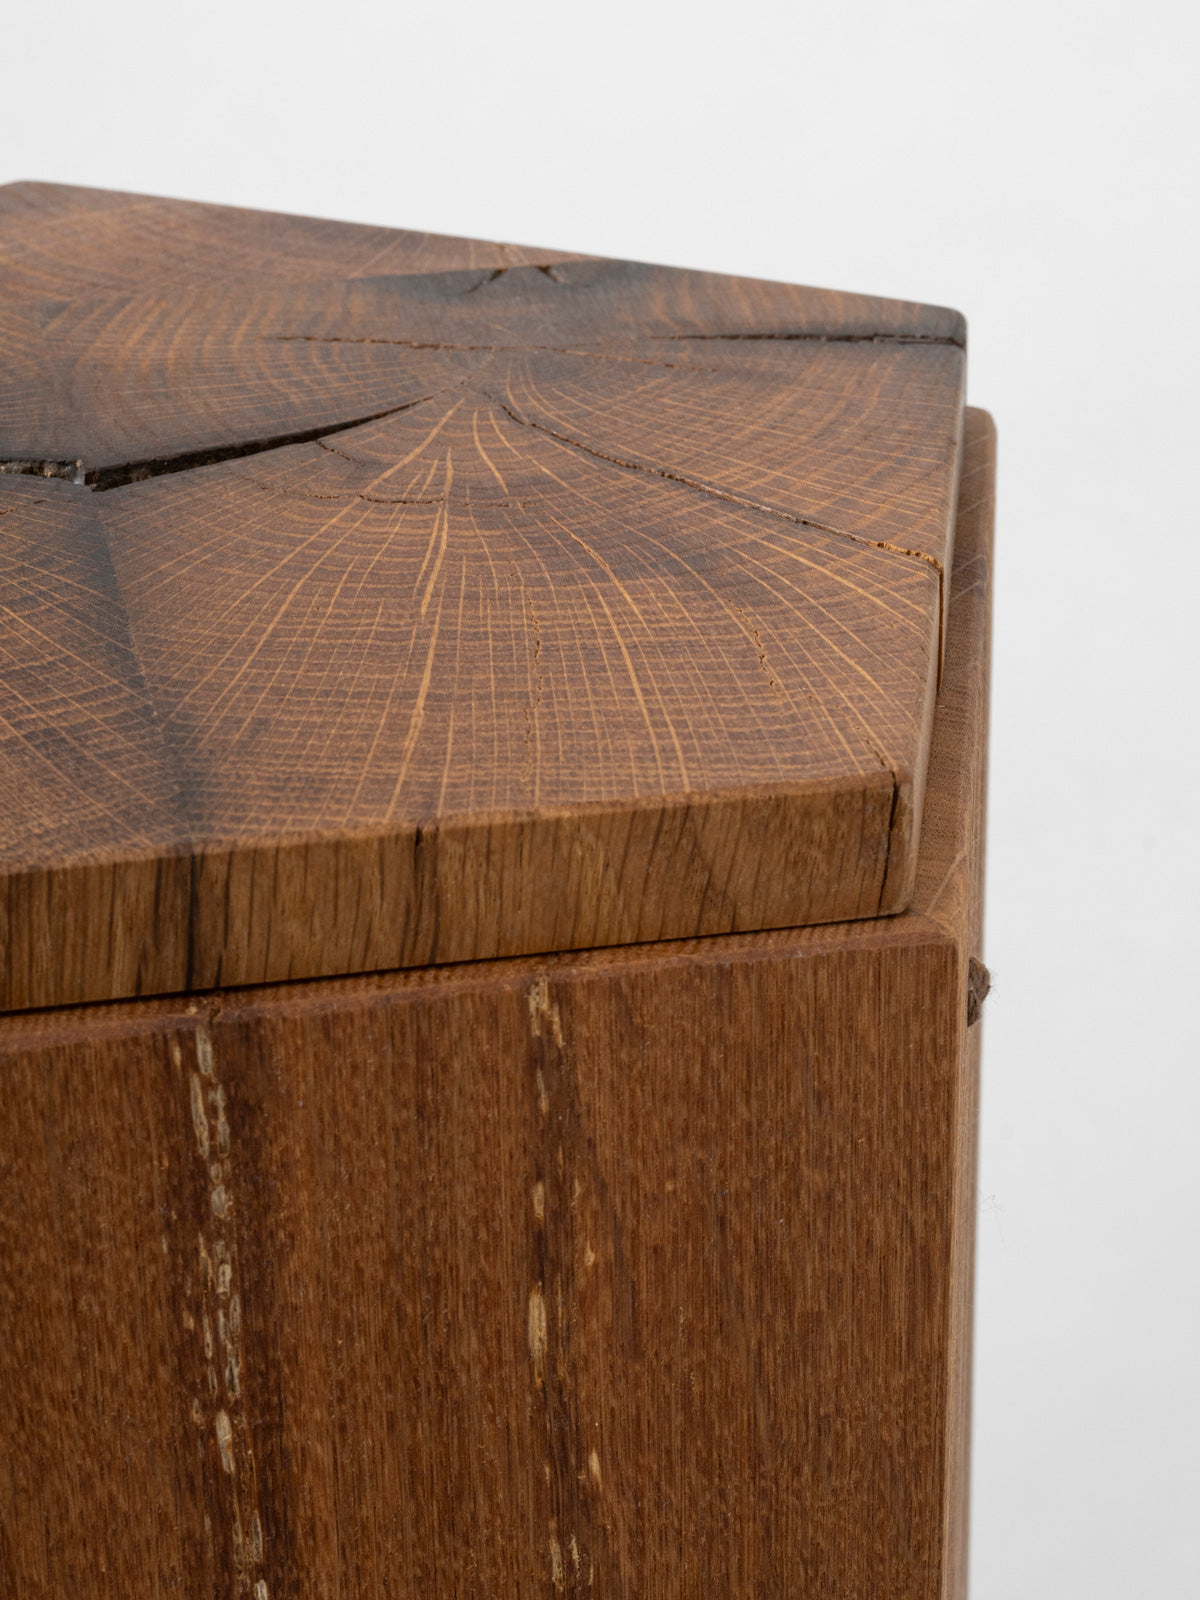 Holzurne für Aschekapsel aus recyceltem Holz, abbaubar für Urnenbestattung, Friedwald und Naturbestattung – Pentaga von urnique 